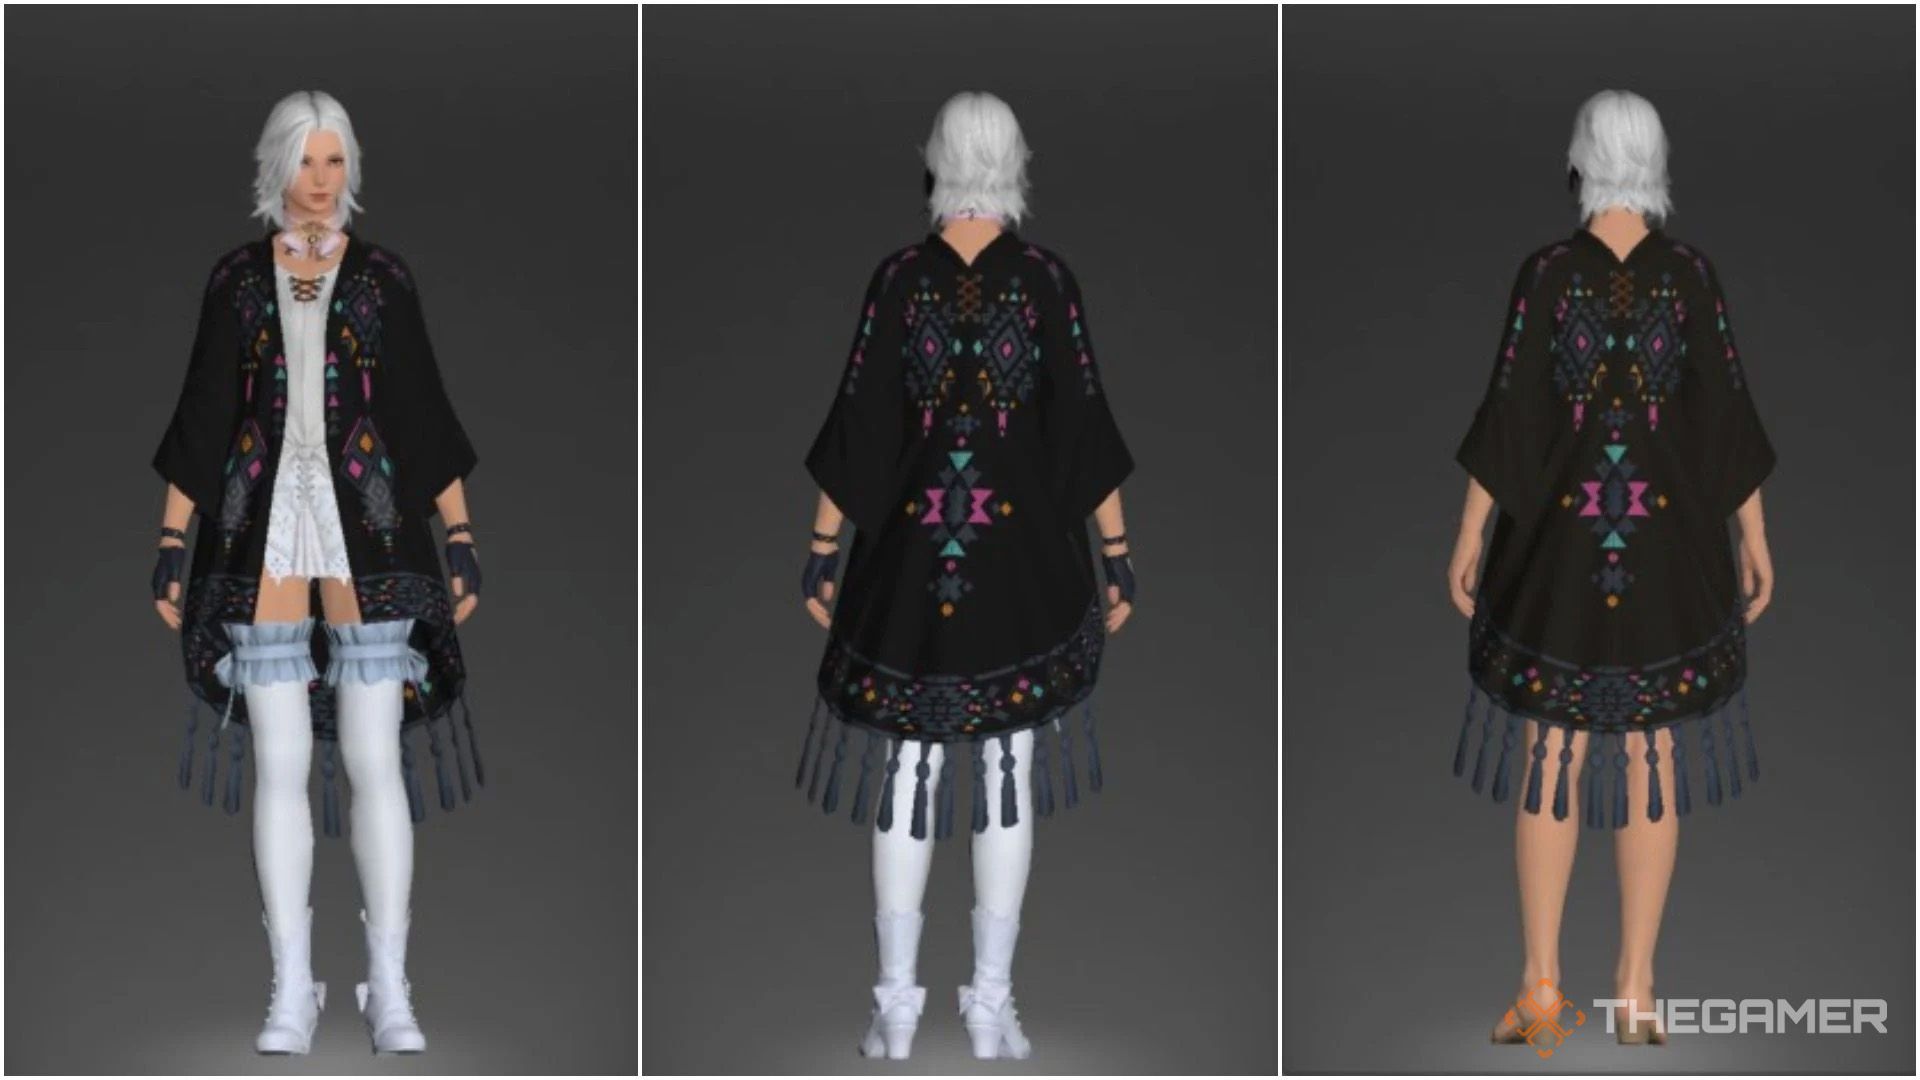 Final Fantasy 14 Jet Black Dye and Soot Black Dye comparison